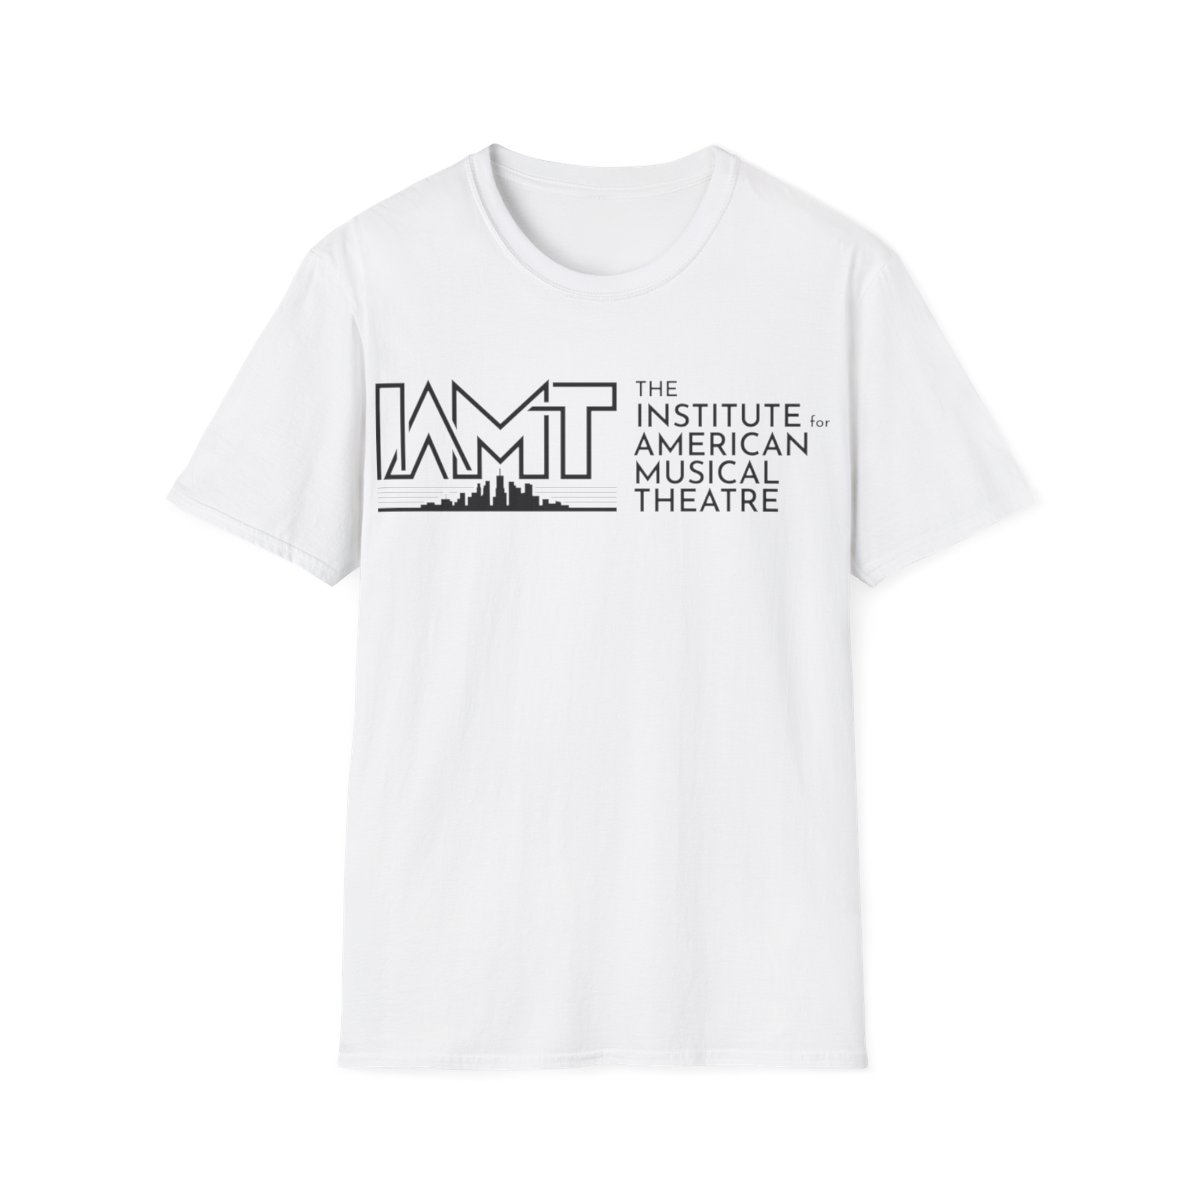 Unisex Softstyle T-Shirt product main image